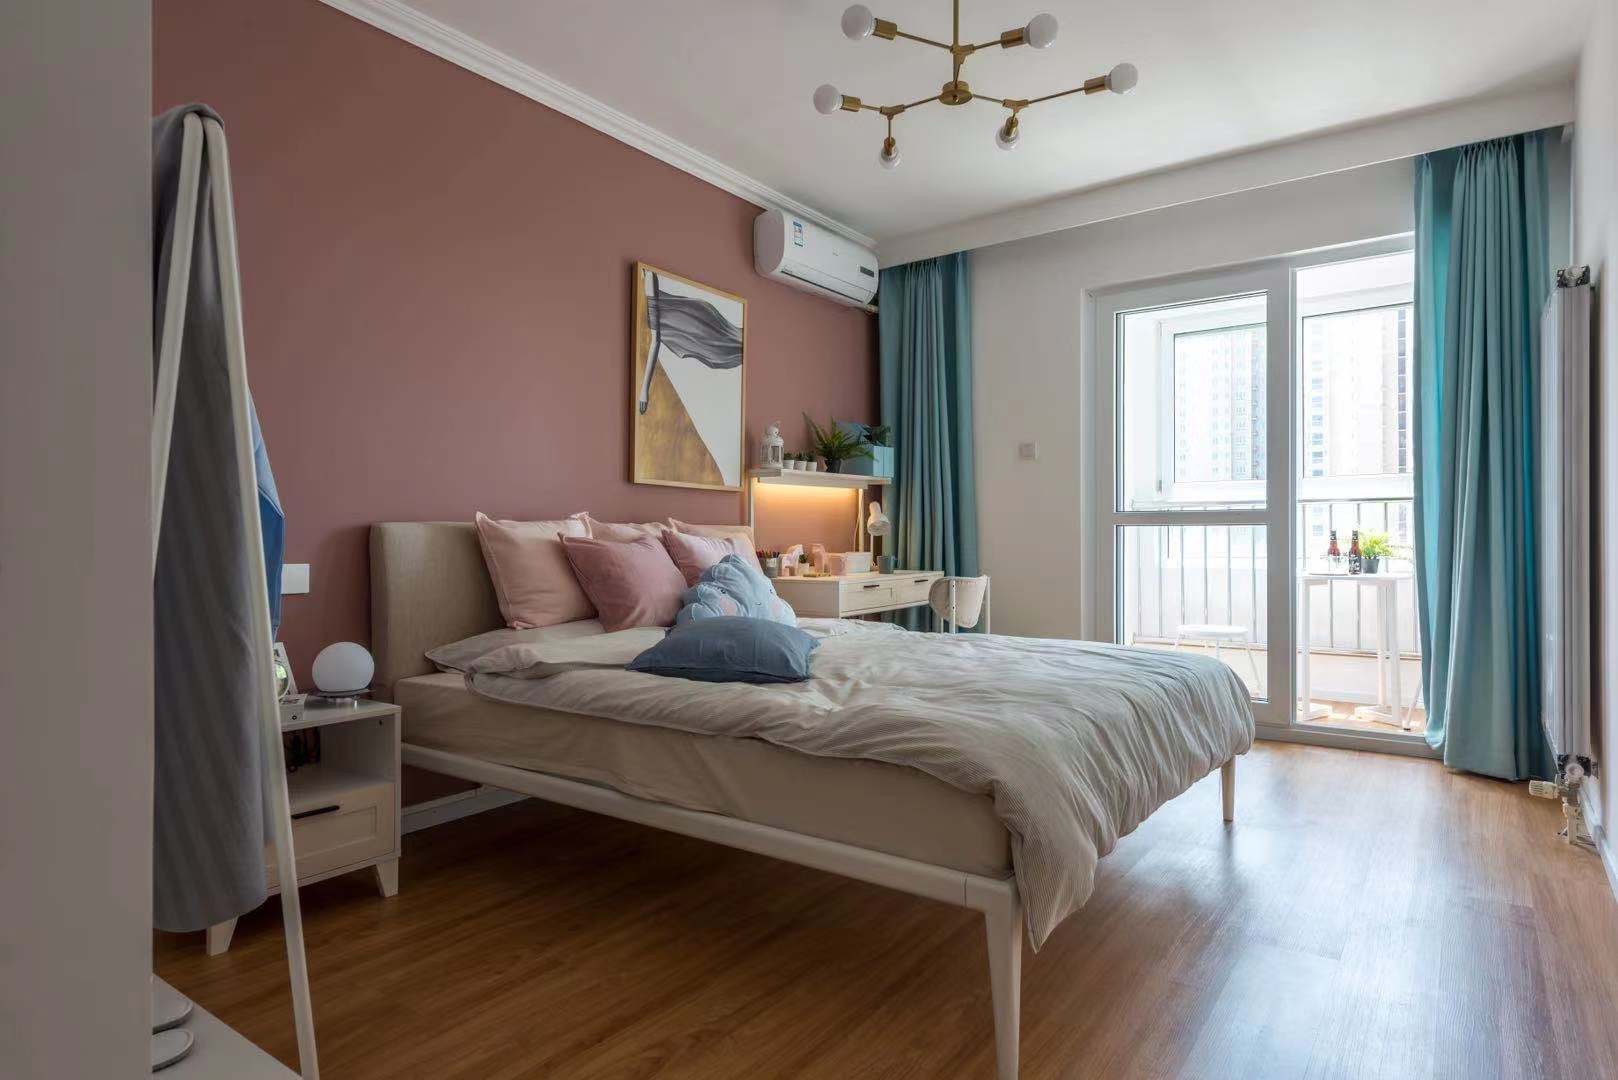 紫燕子公寓—— 稳收益 零风险是房东做“甩手掌柜”的新选择